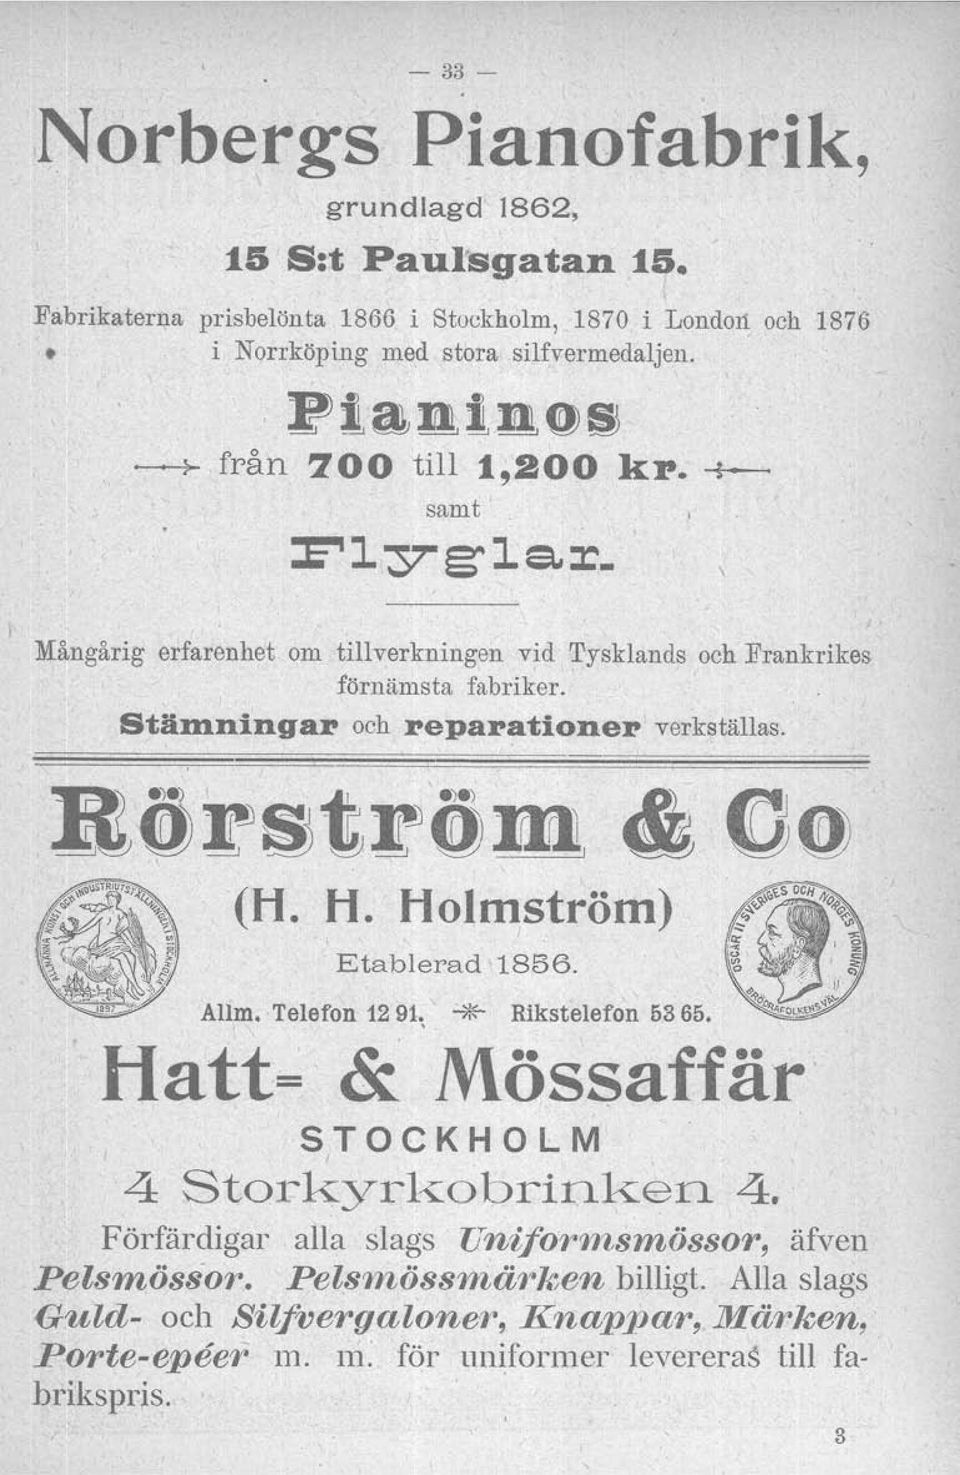 ninga:r och :repa:ratione:r verkställas. BÖF~tröm, " 00 (H. H. Holmström) Etablerad 1856. Allm. Telefon 1291~ ""*" Rikstelefon 6365.